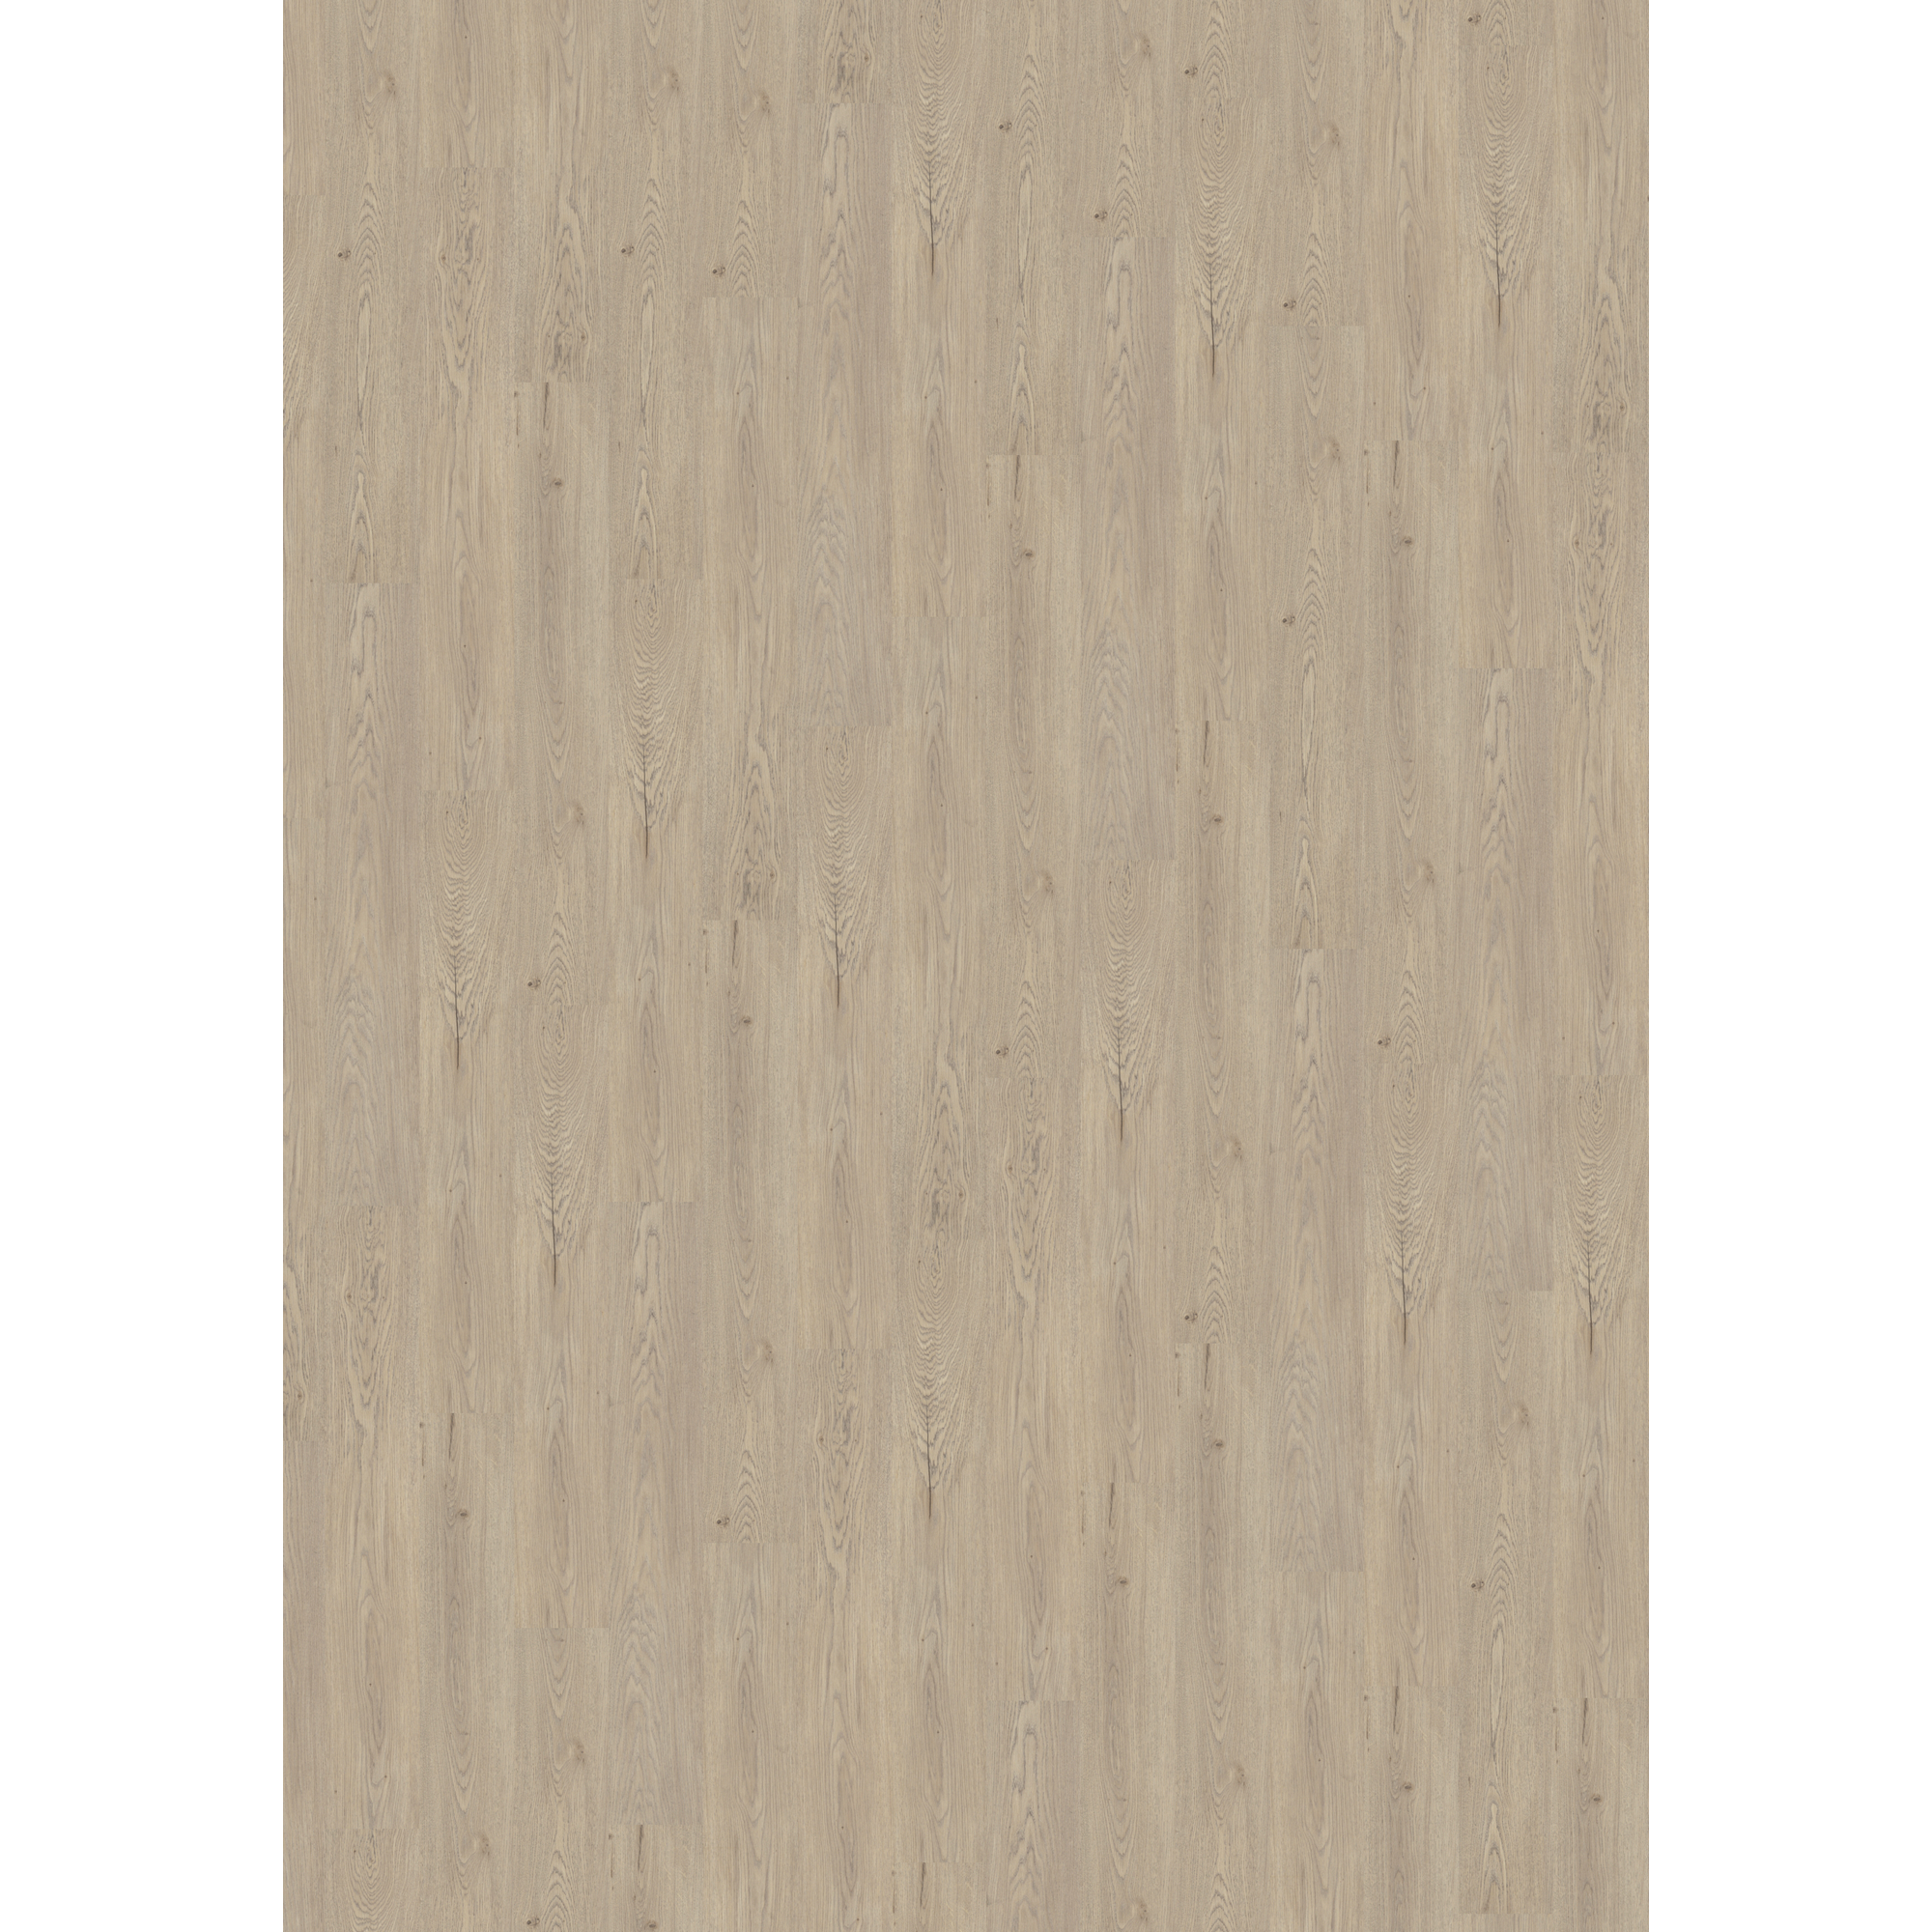 Vinylboden 'Comfort' Light Pastel Oak naturgrau 10,5 mm + product picture